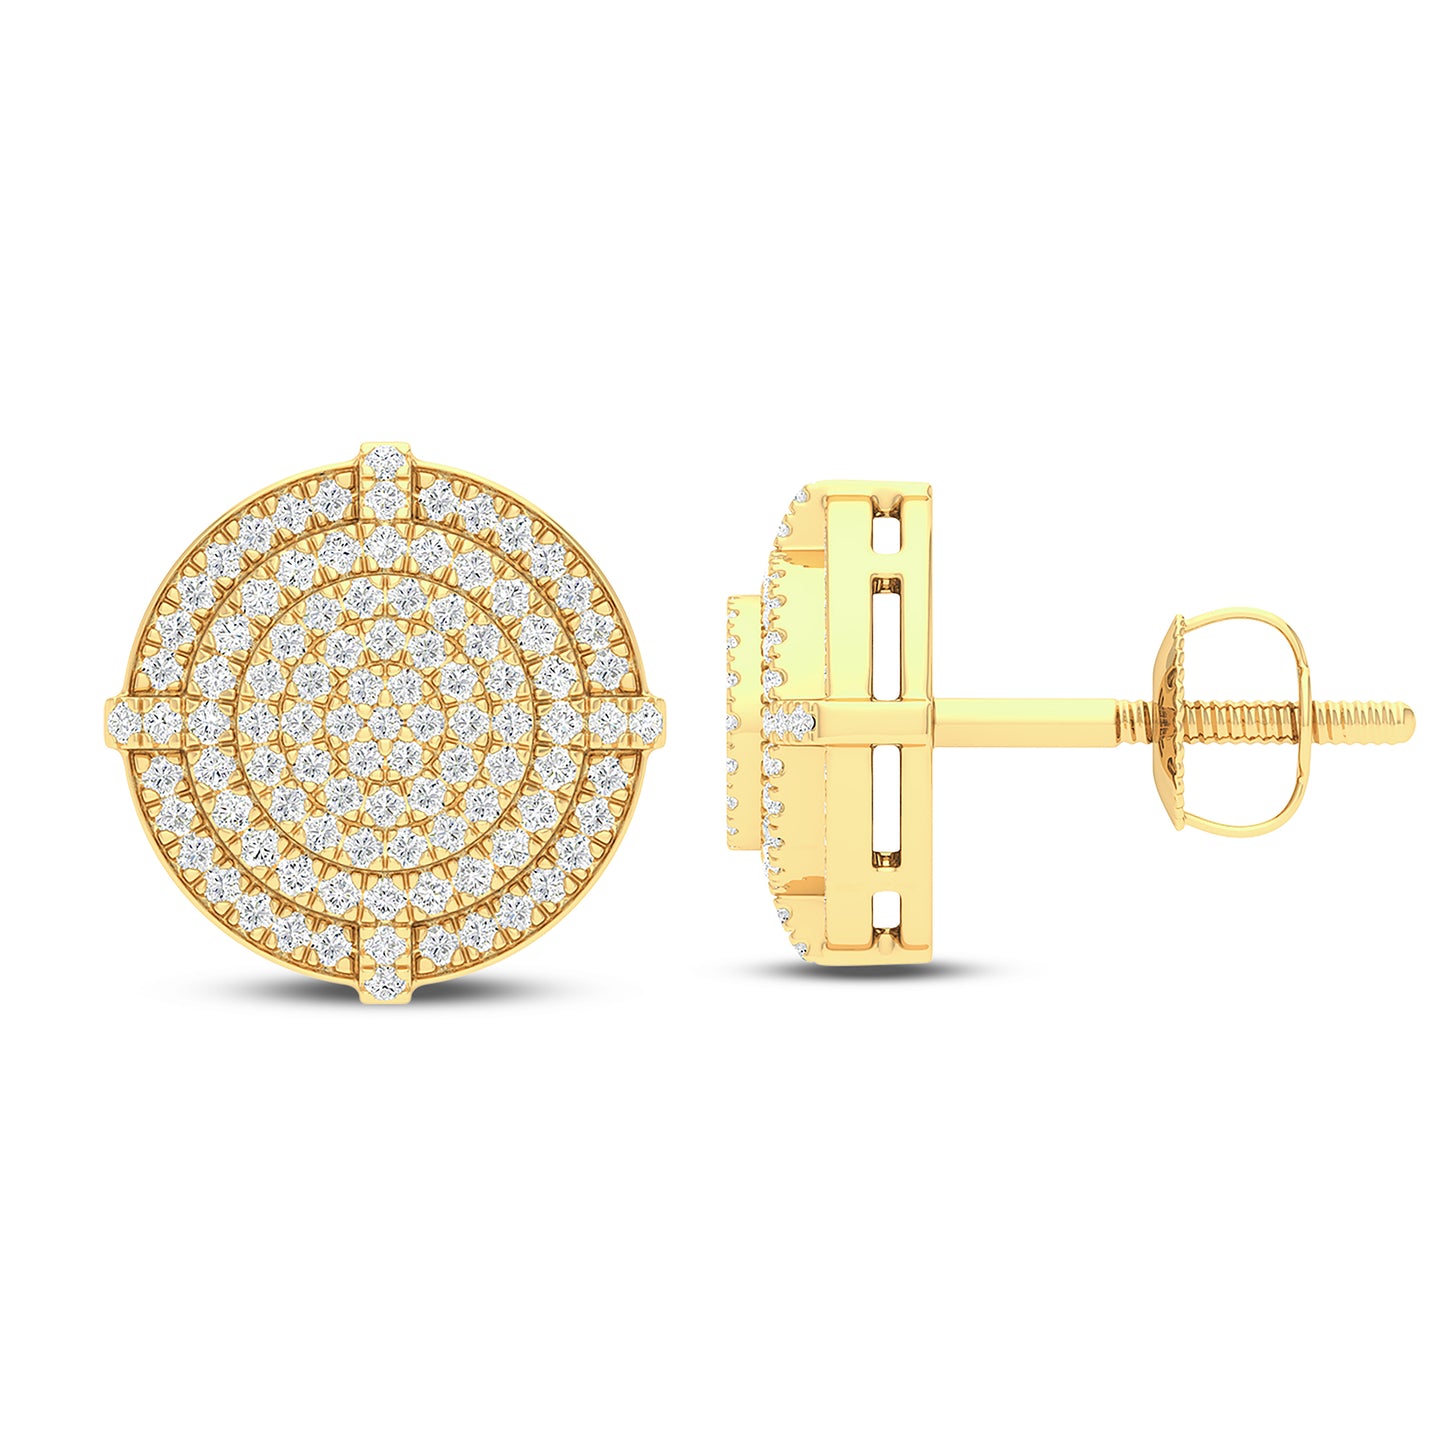 10 Karat Yellow Gold 0.33 Carat Diamond Round Earrings-0129872-YG